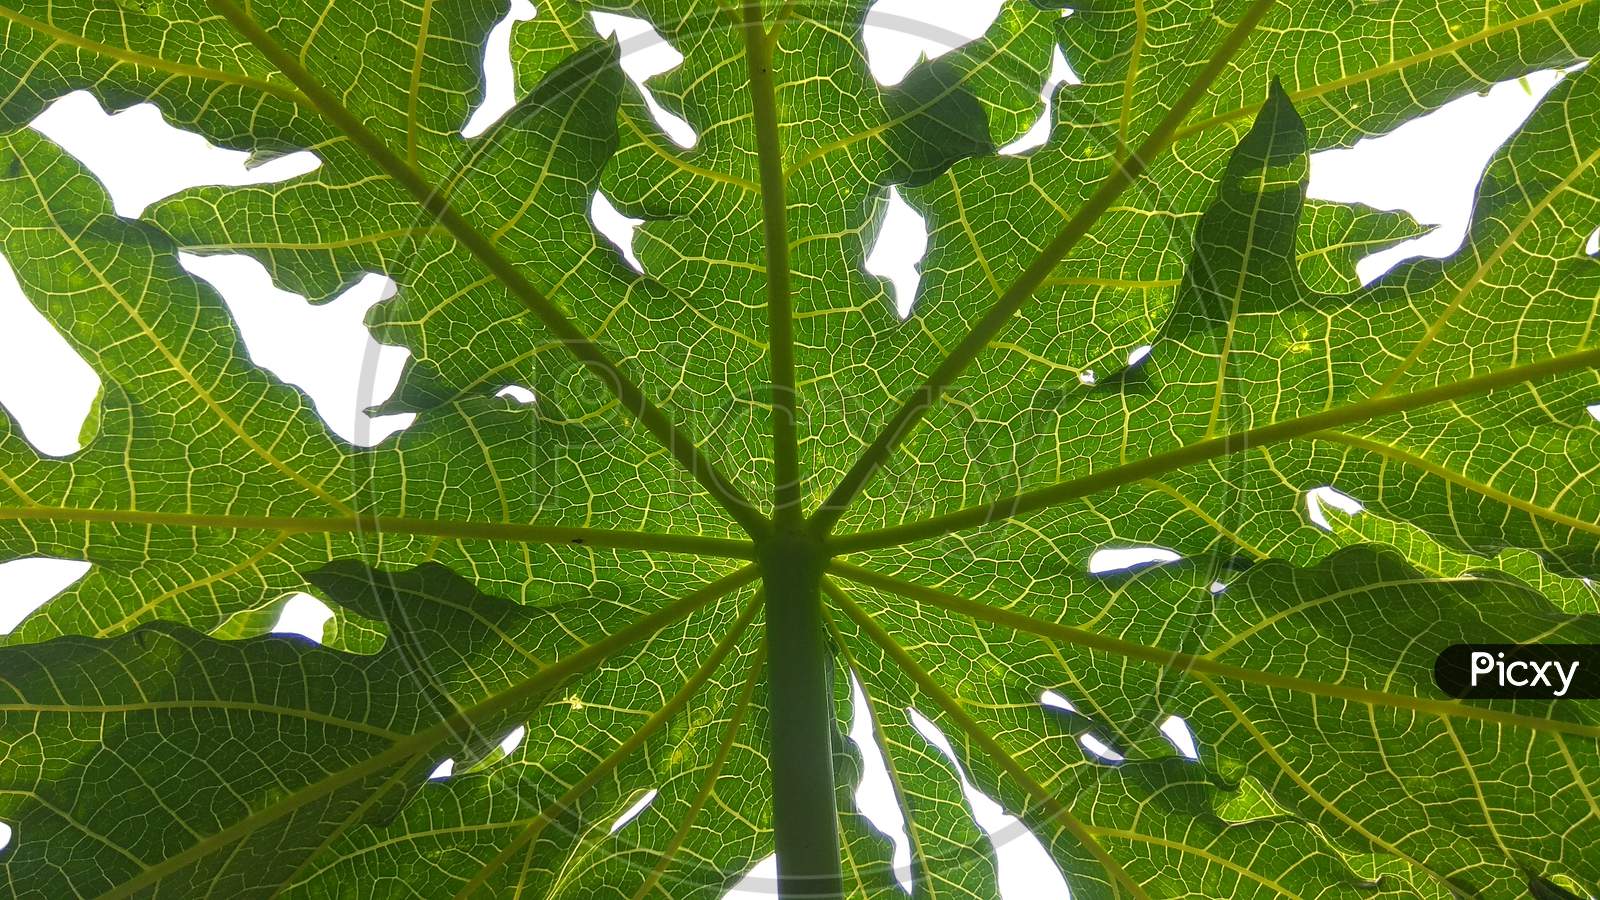 Papaya leaf.